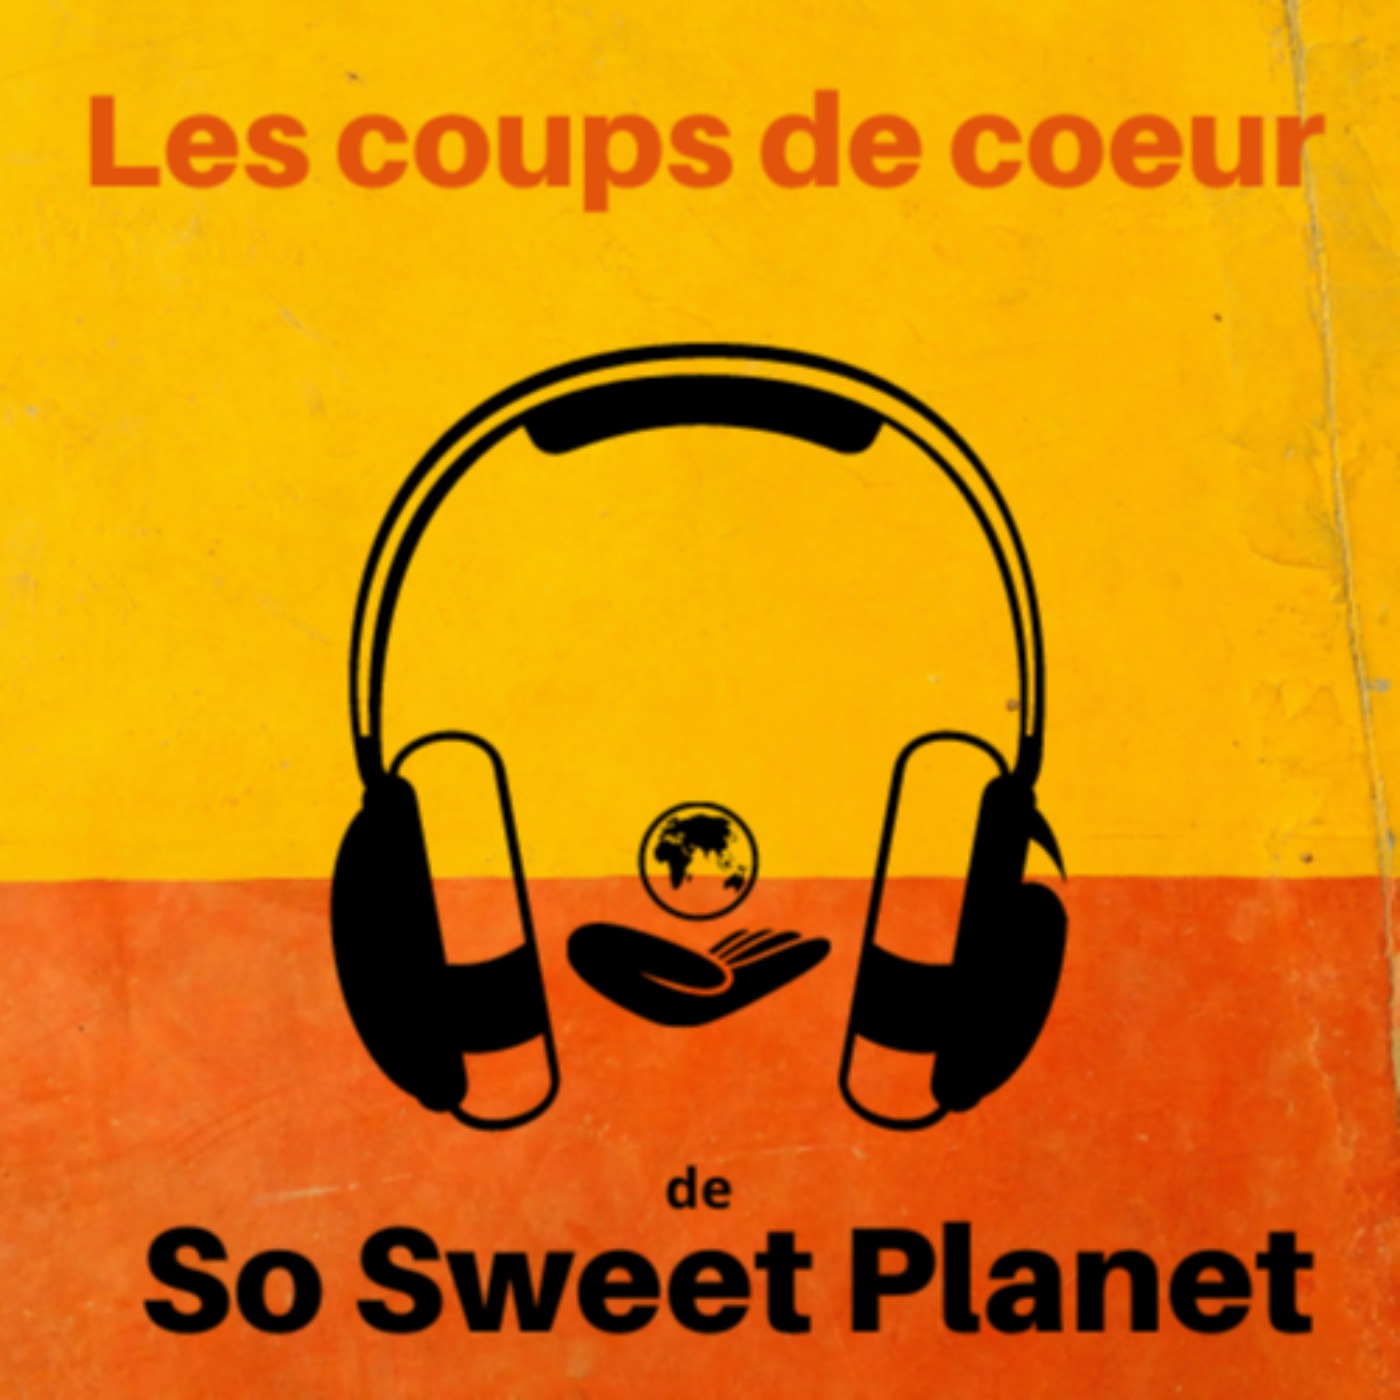 Les Coups de coeur de So Sweet Planet 1. Livres, films, musique, expos, événements, actu des ONG, documentaires, séries...